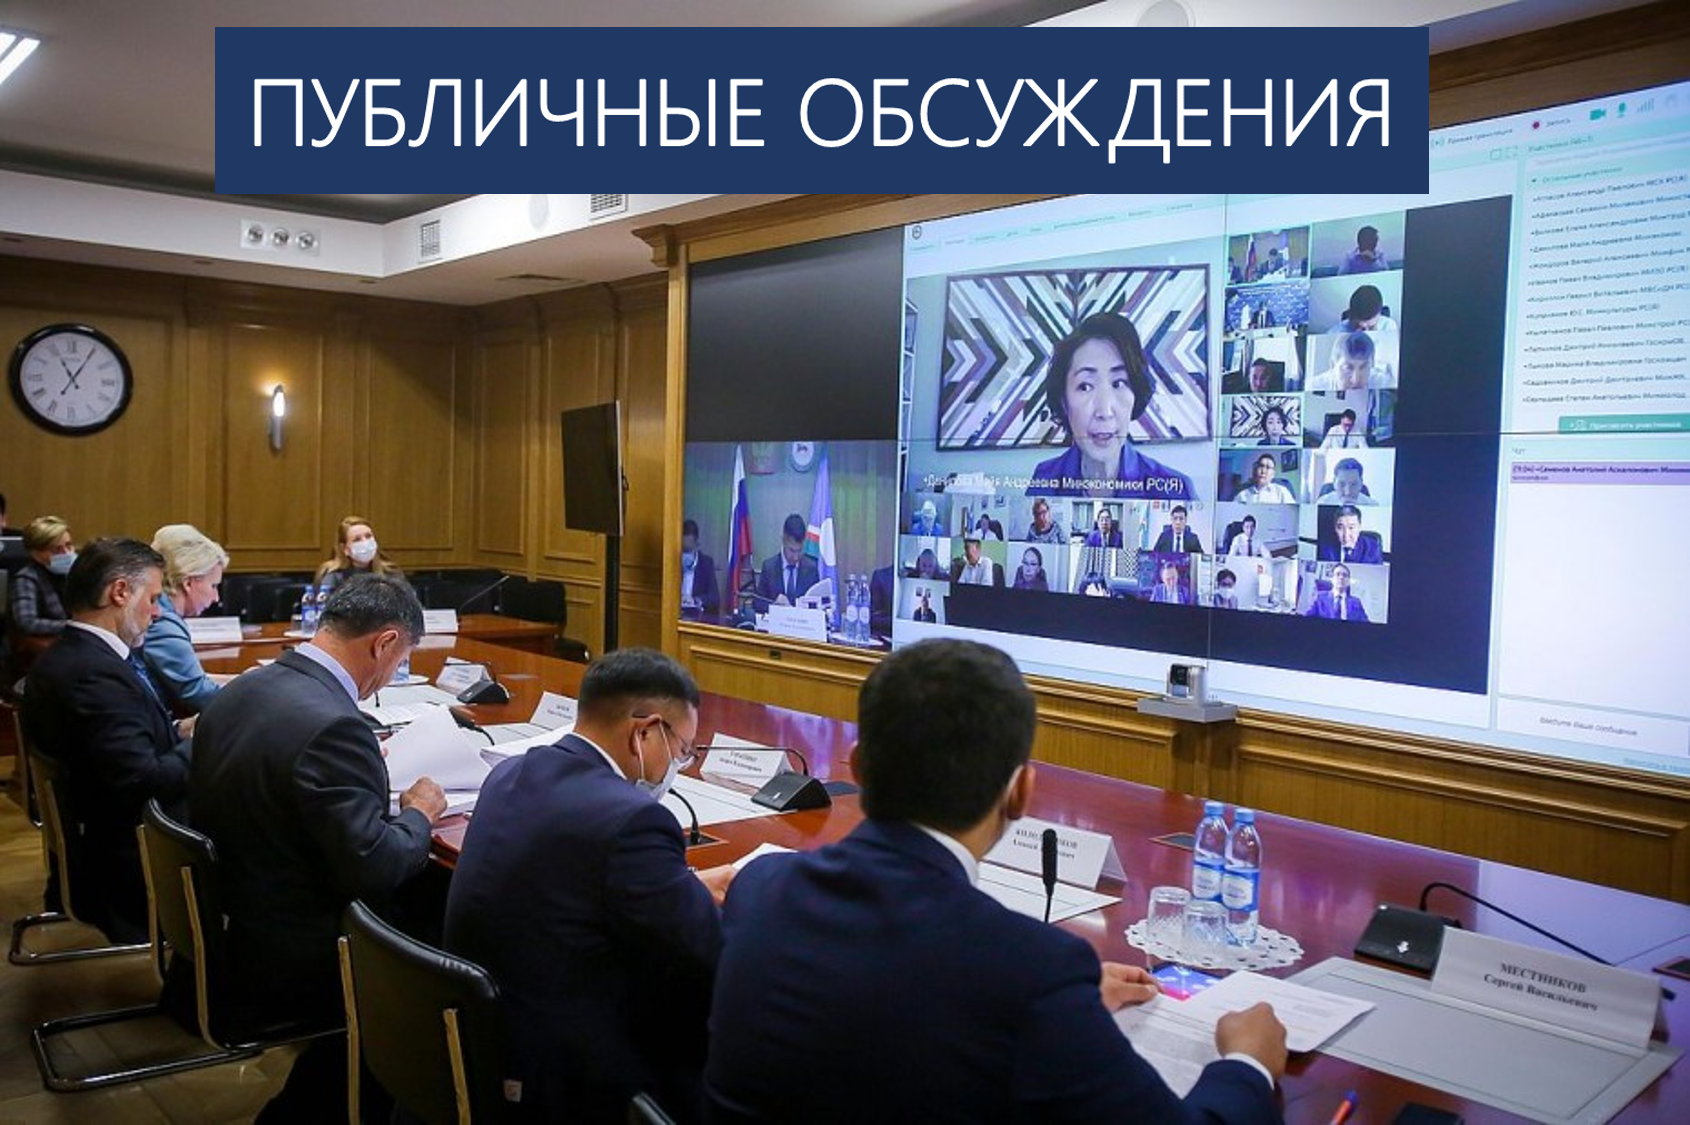 24 августа состоятся публичные обсуждения правоприменительной практики деятельности надзорных органов Якутии